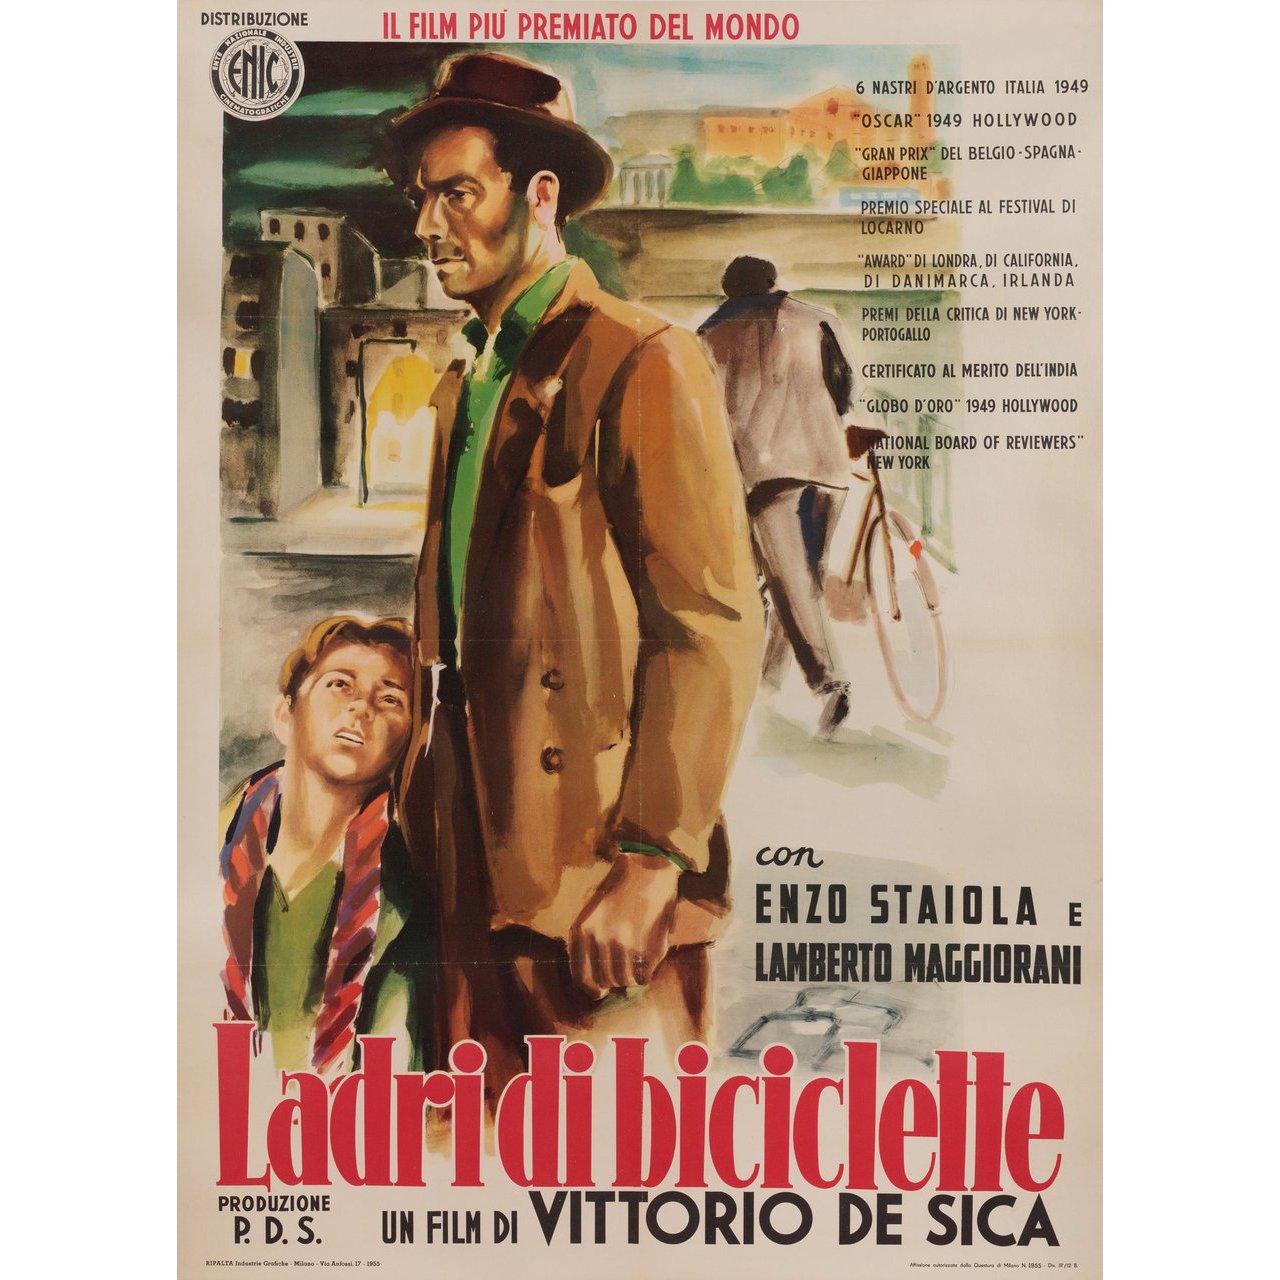 Originalplakat der italienischen Neuauflage von 1955 für den Film Fahrraddiebe (Ladri di biciclette) von 1948 unter der Regie von Vittorio De Sica mit Lamberto Maggiorani / Enzo Staiola / Lianella Carell / Gino Saltamerenda. Guter Zustand, mit